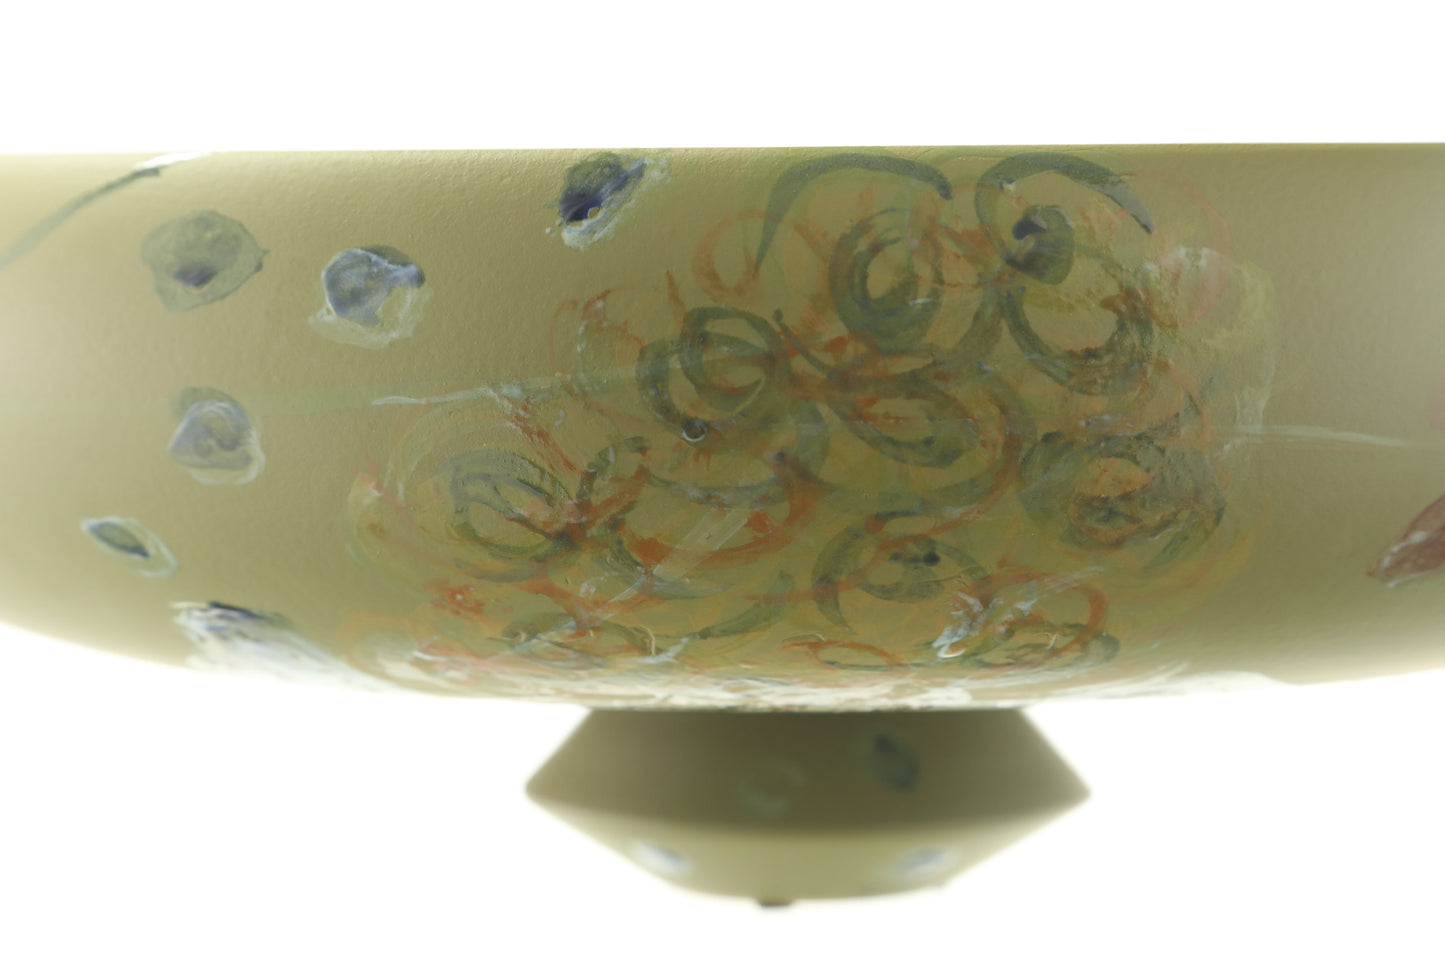 Centrotavola "The Avocado Collection" Ceramiche Rometti - Luisa Longo x Casa Triplef